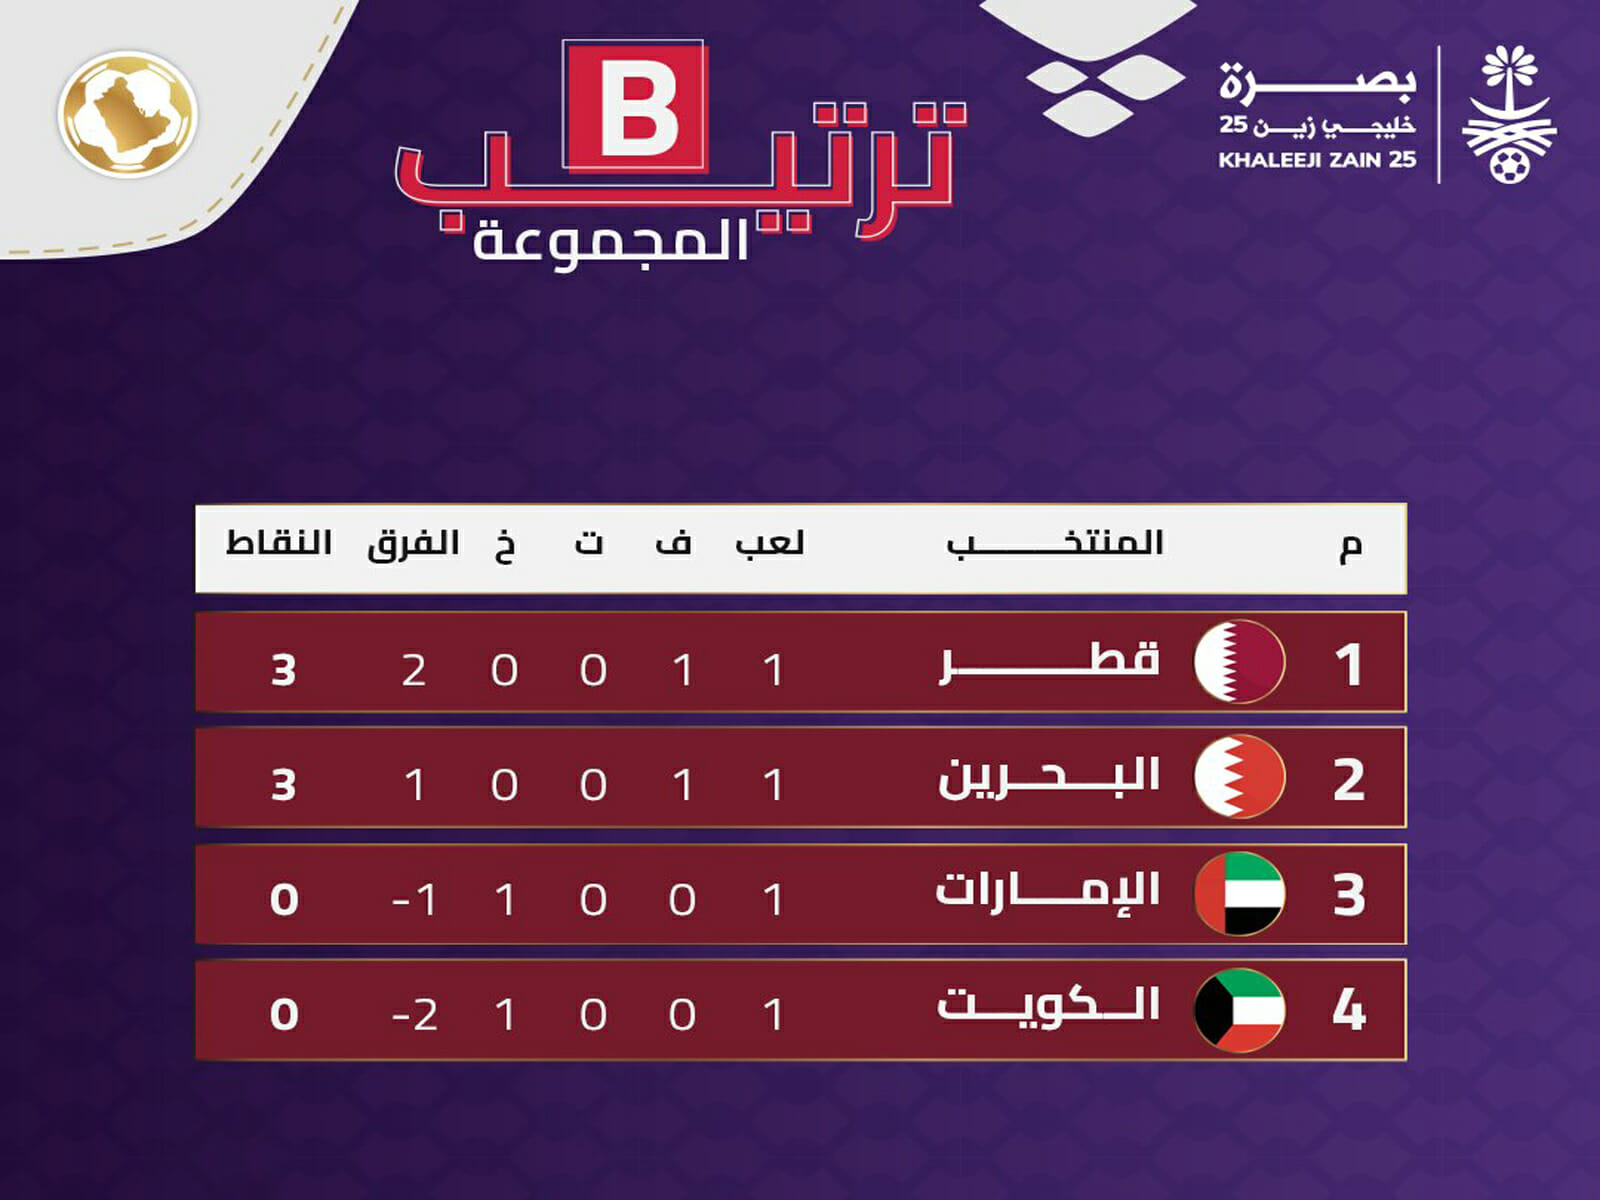 مجموعات كأس الخليج 2023 الترتيب